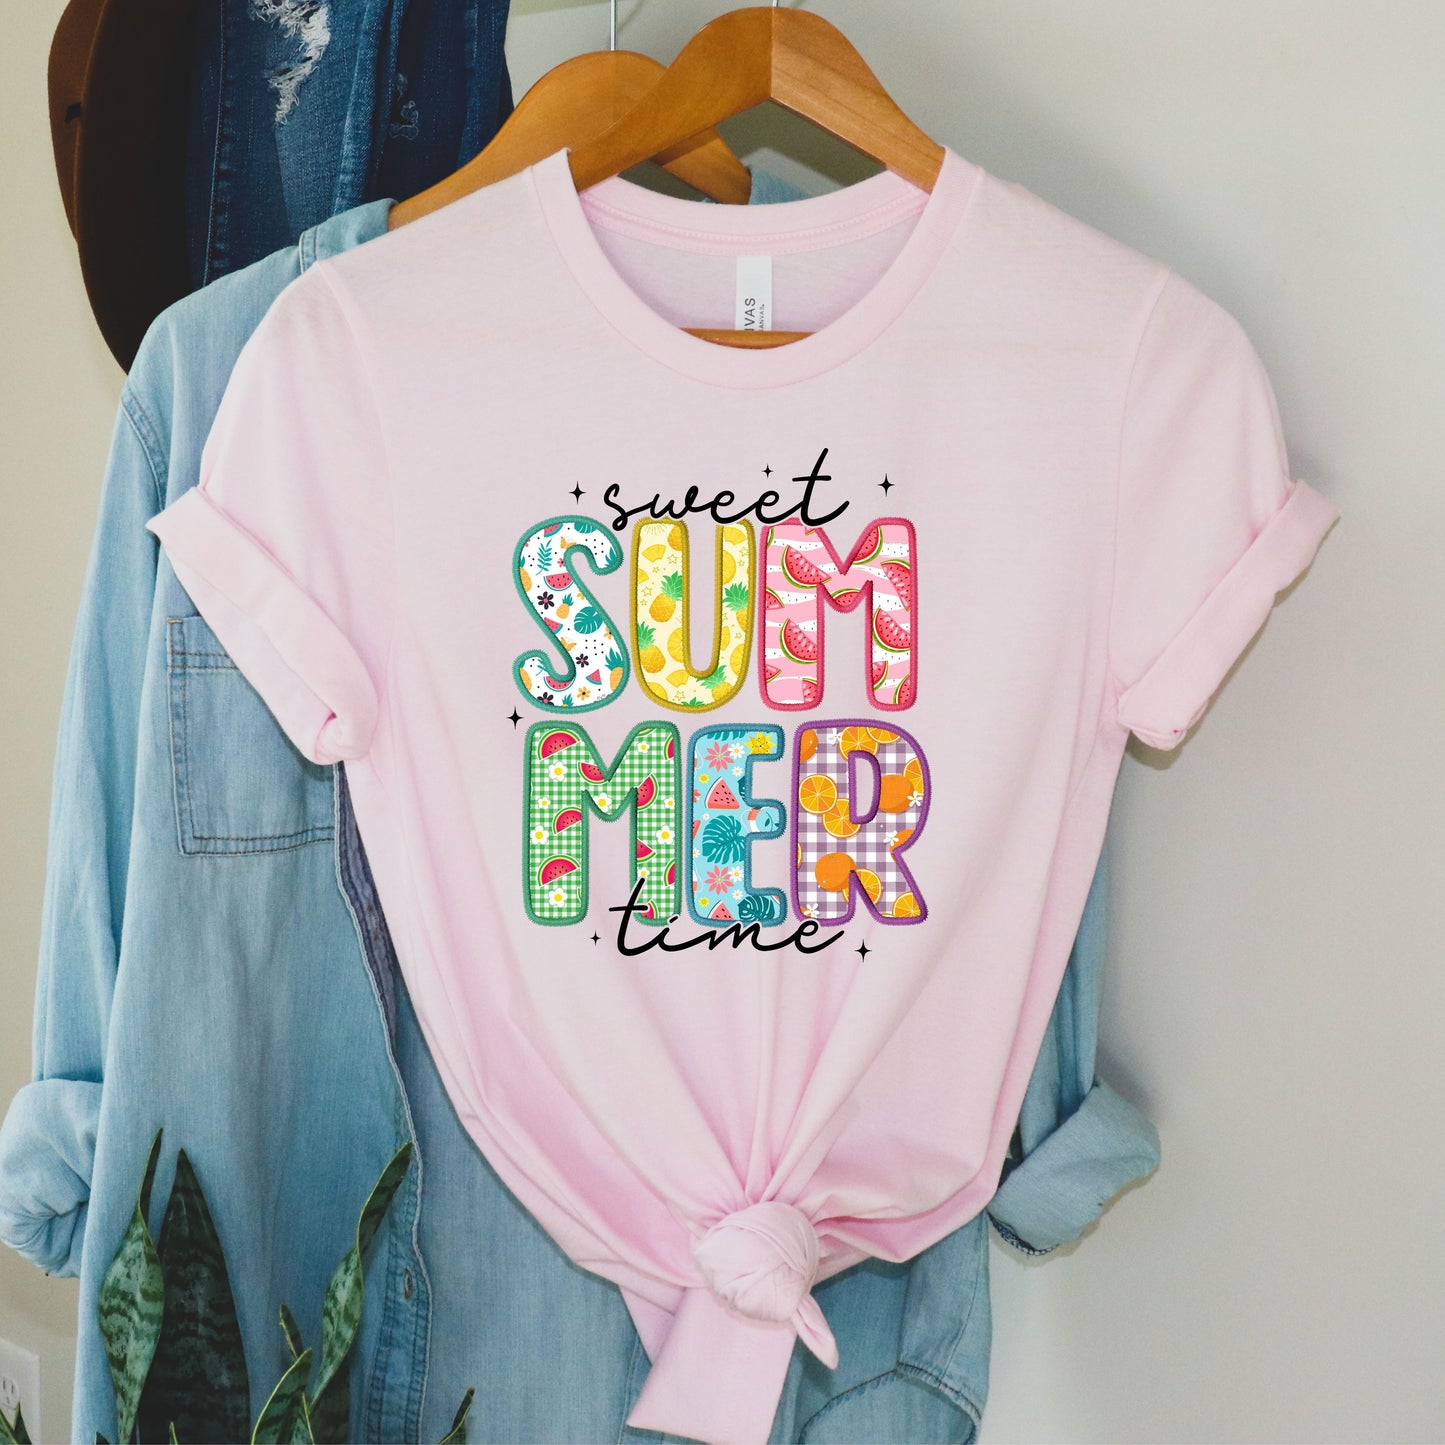 Sweet Summertime:  Short Sleeve T-Shirt With Summer Designs